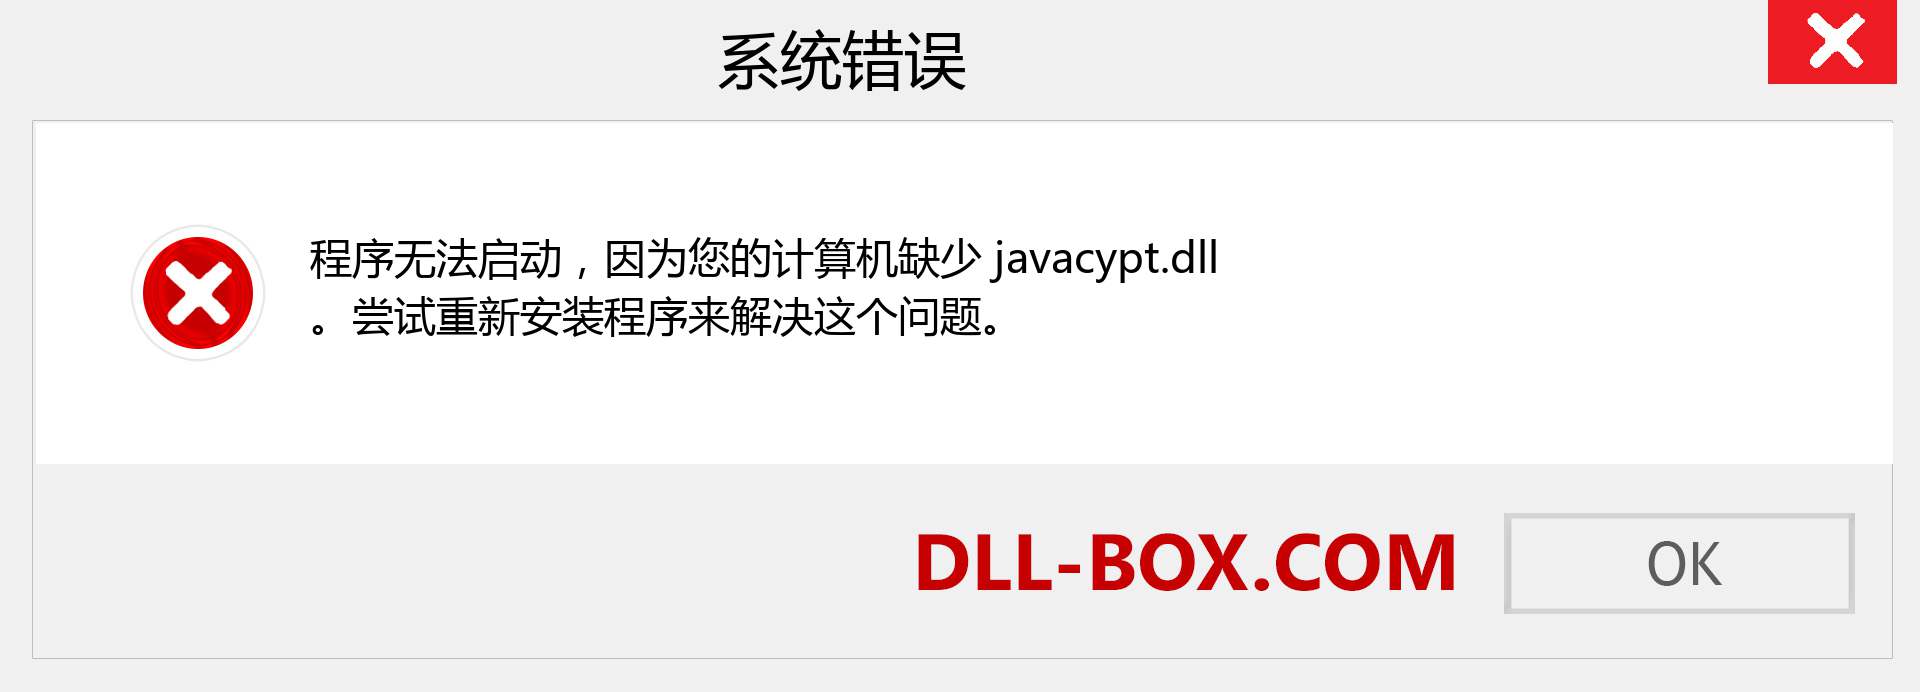 javacypt.dll 文件丢失？。 适用于 Windows 7、8、10 的下载 - 修复 Windows、照片、图像上的 javacypt dll 丢失错误